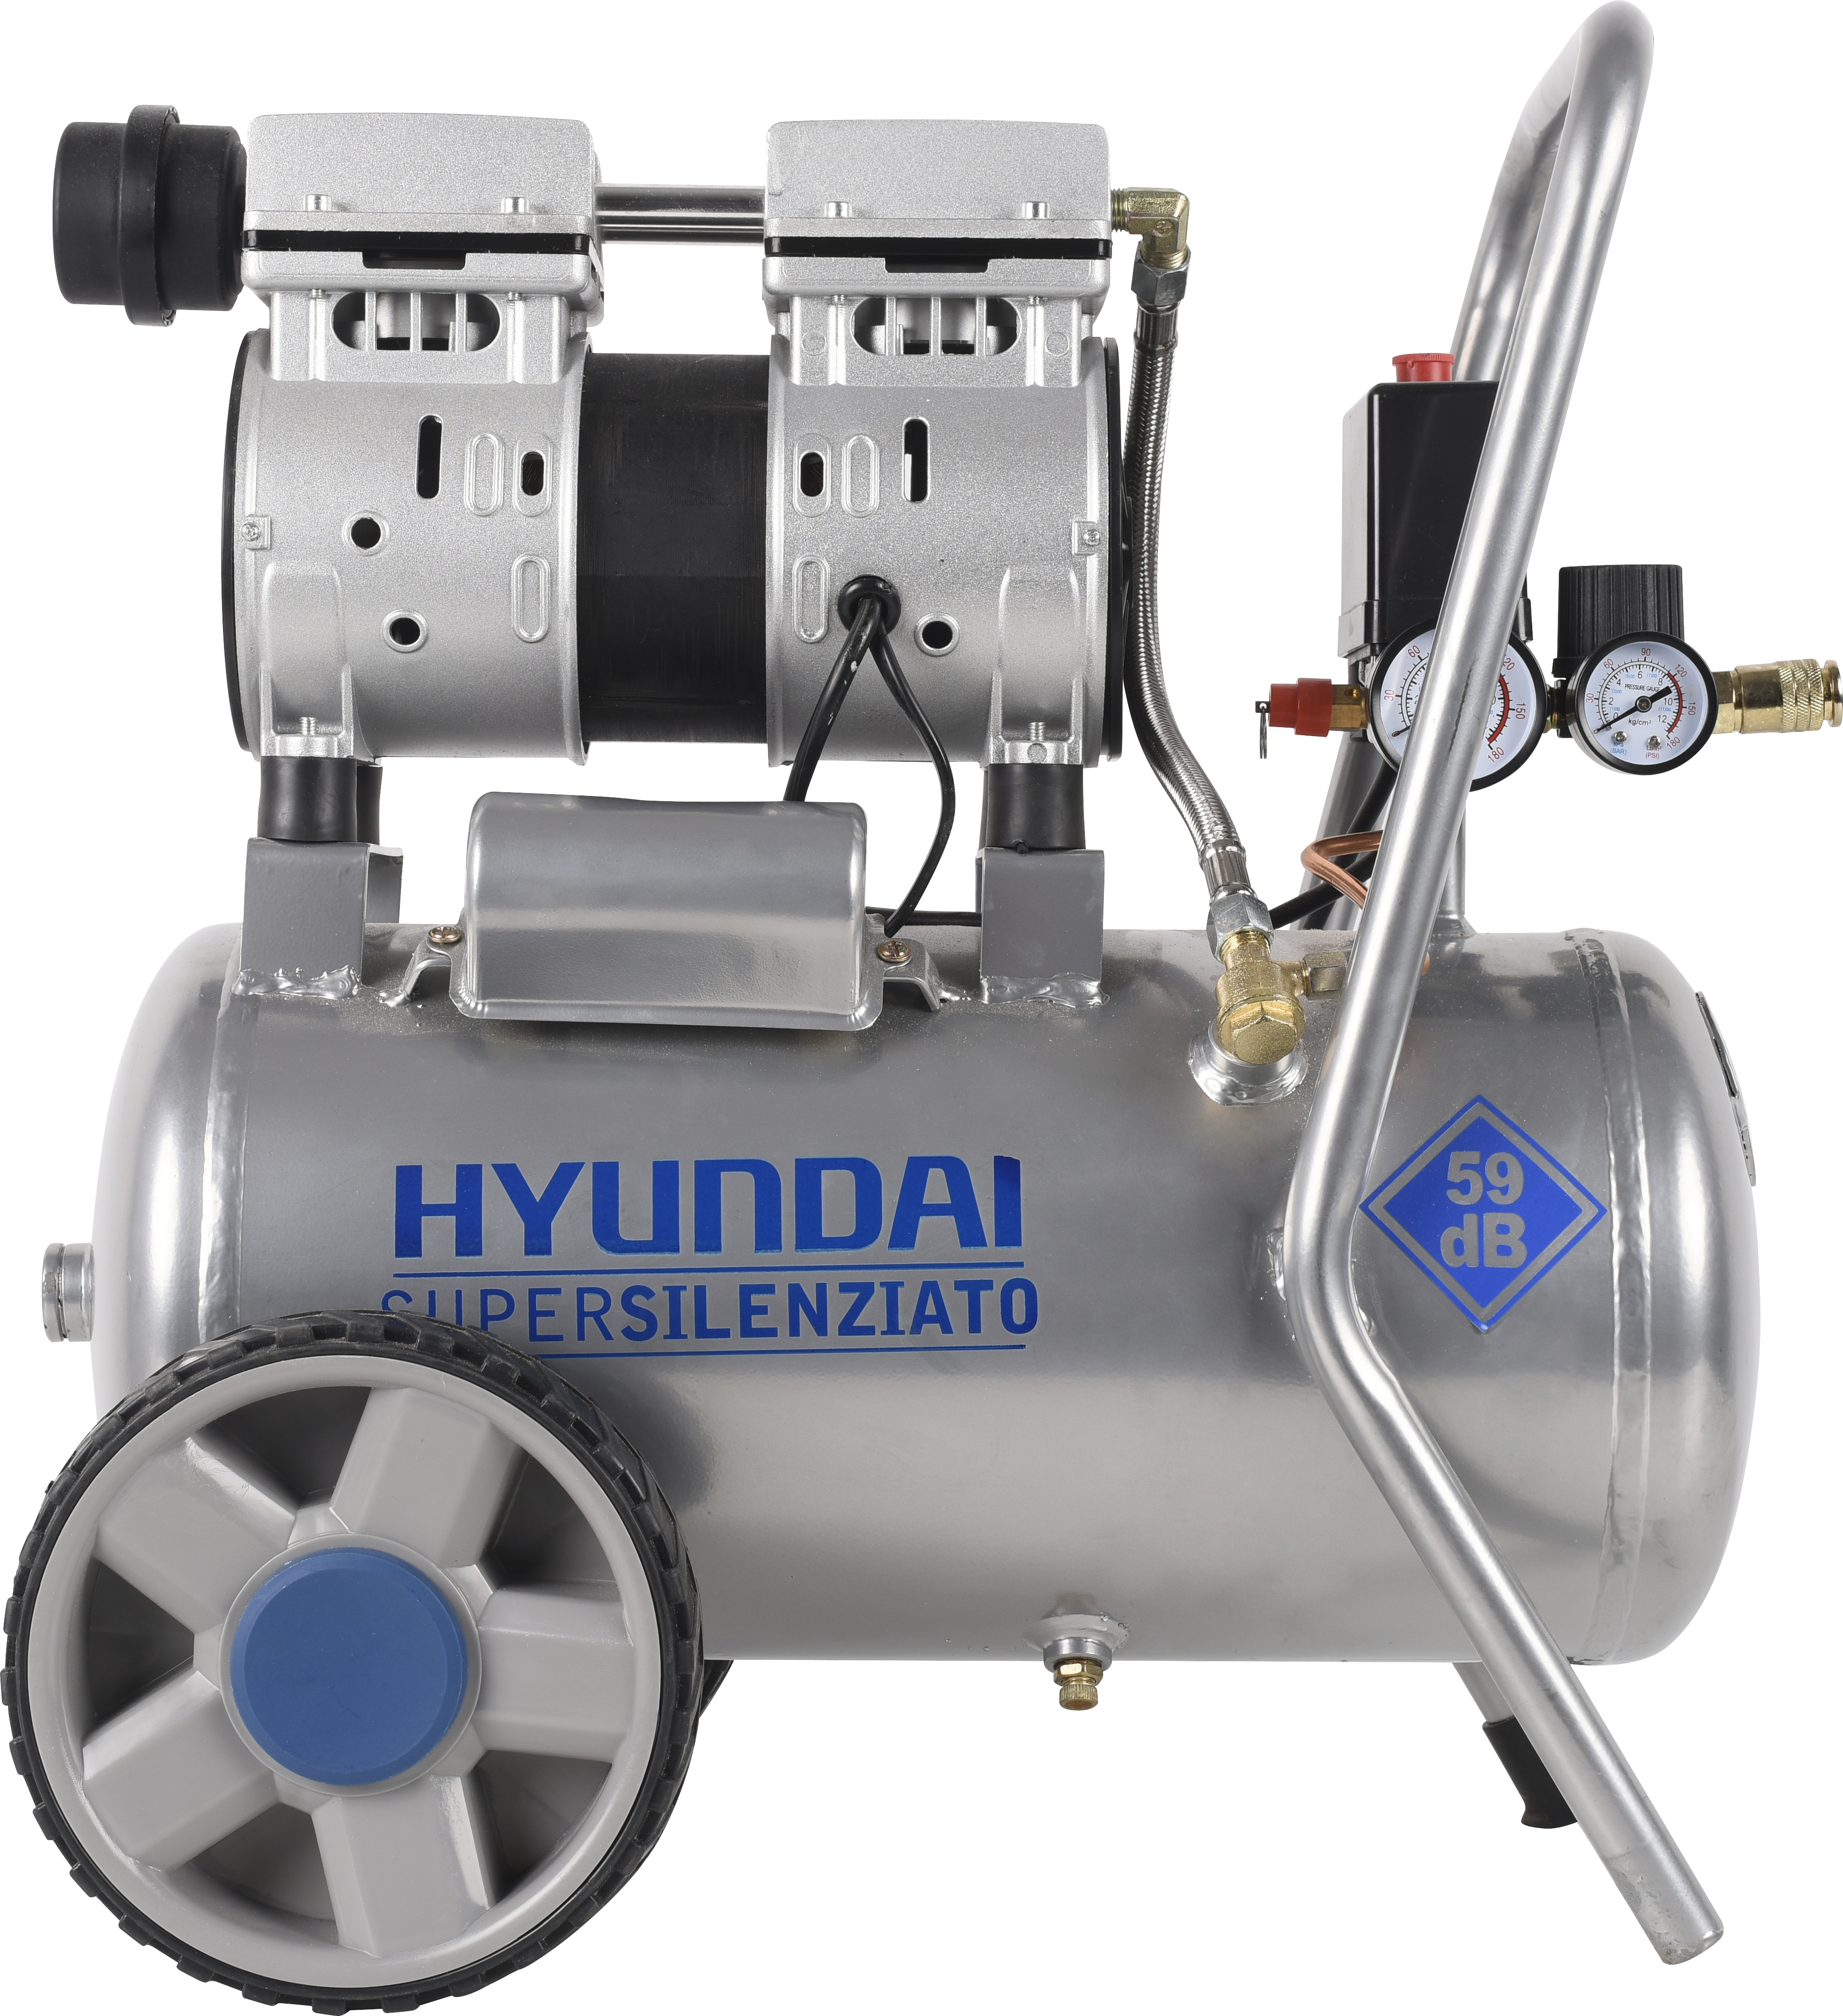 Compresor silencioso hyundai hyac24-1s de 1 cv y 24l de depósito